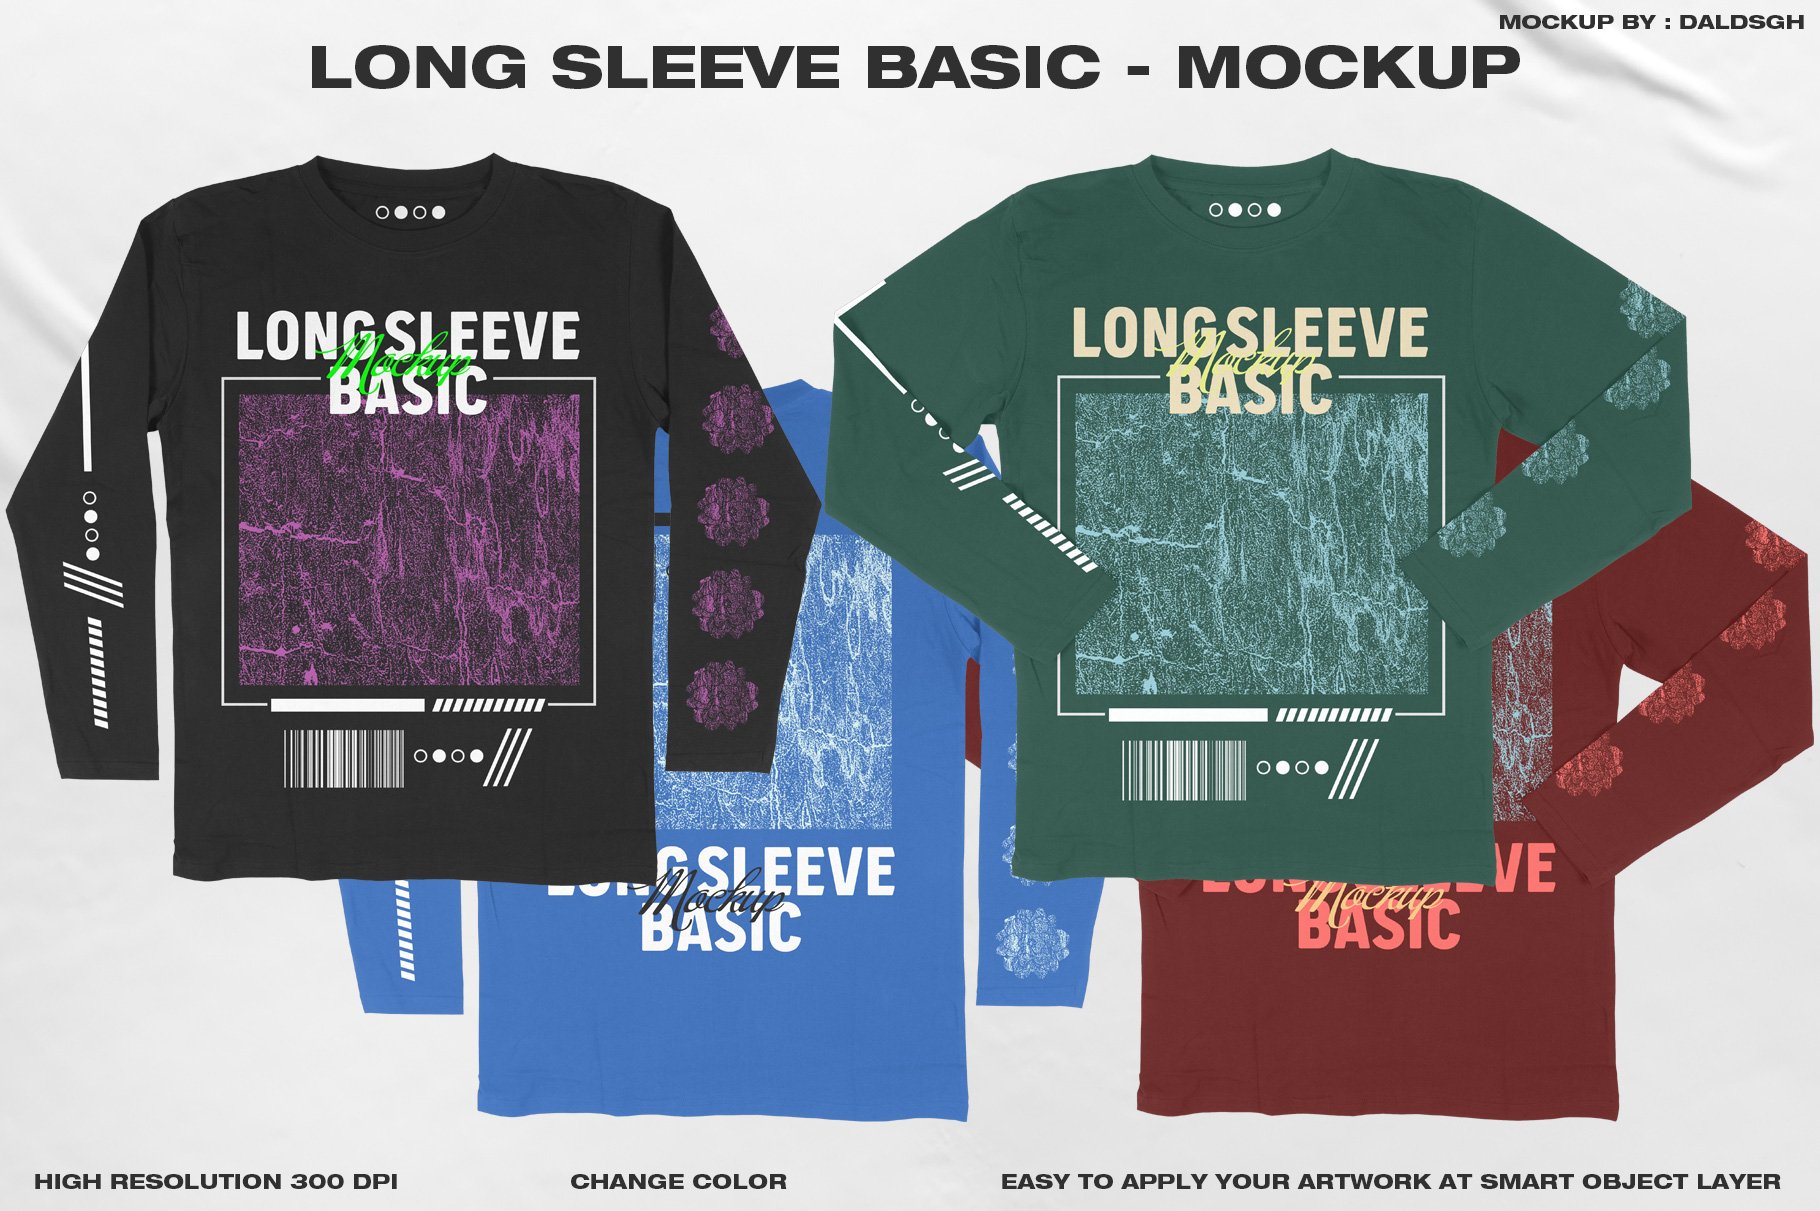 Long Sleeve Basic - Mockup cover image.